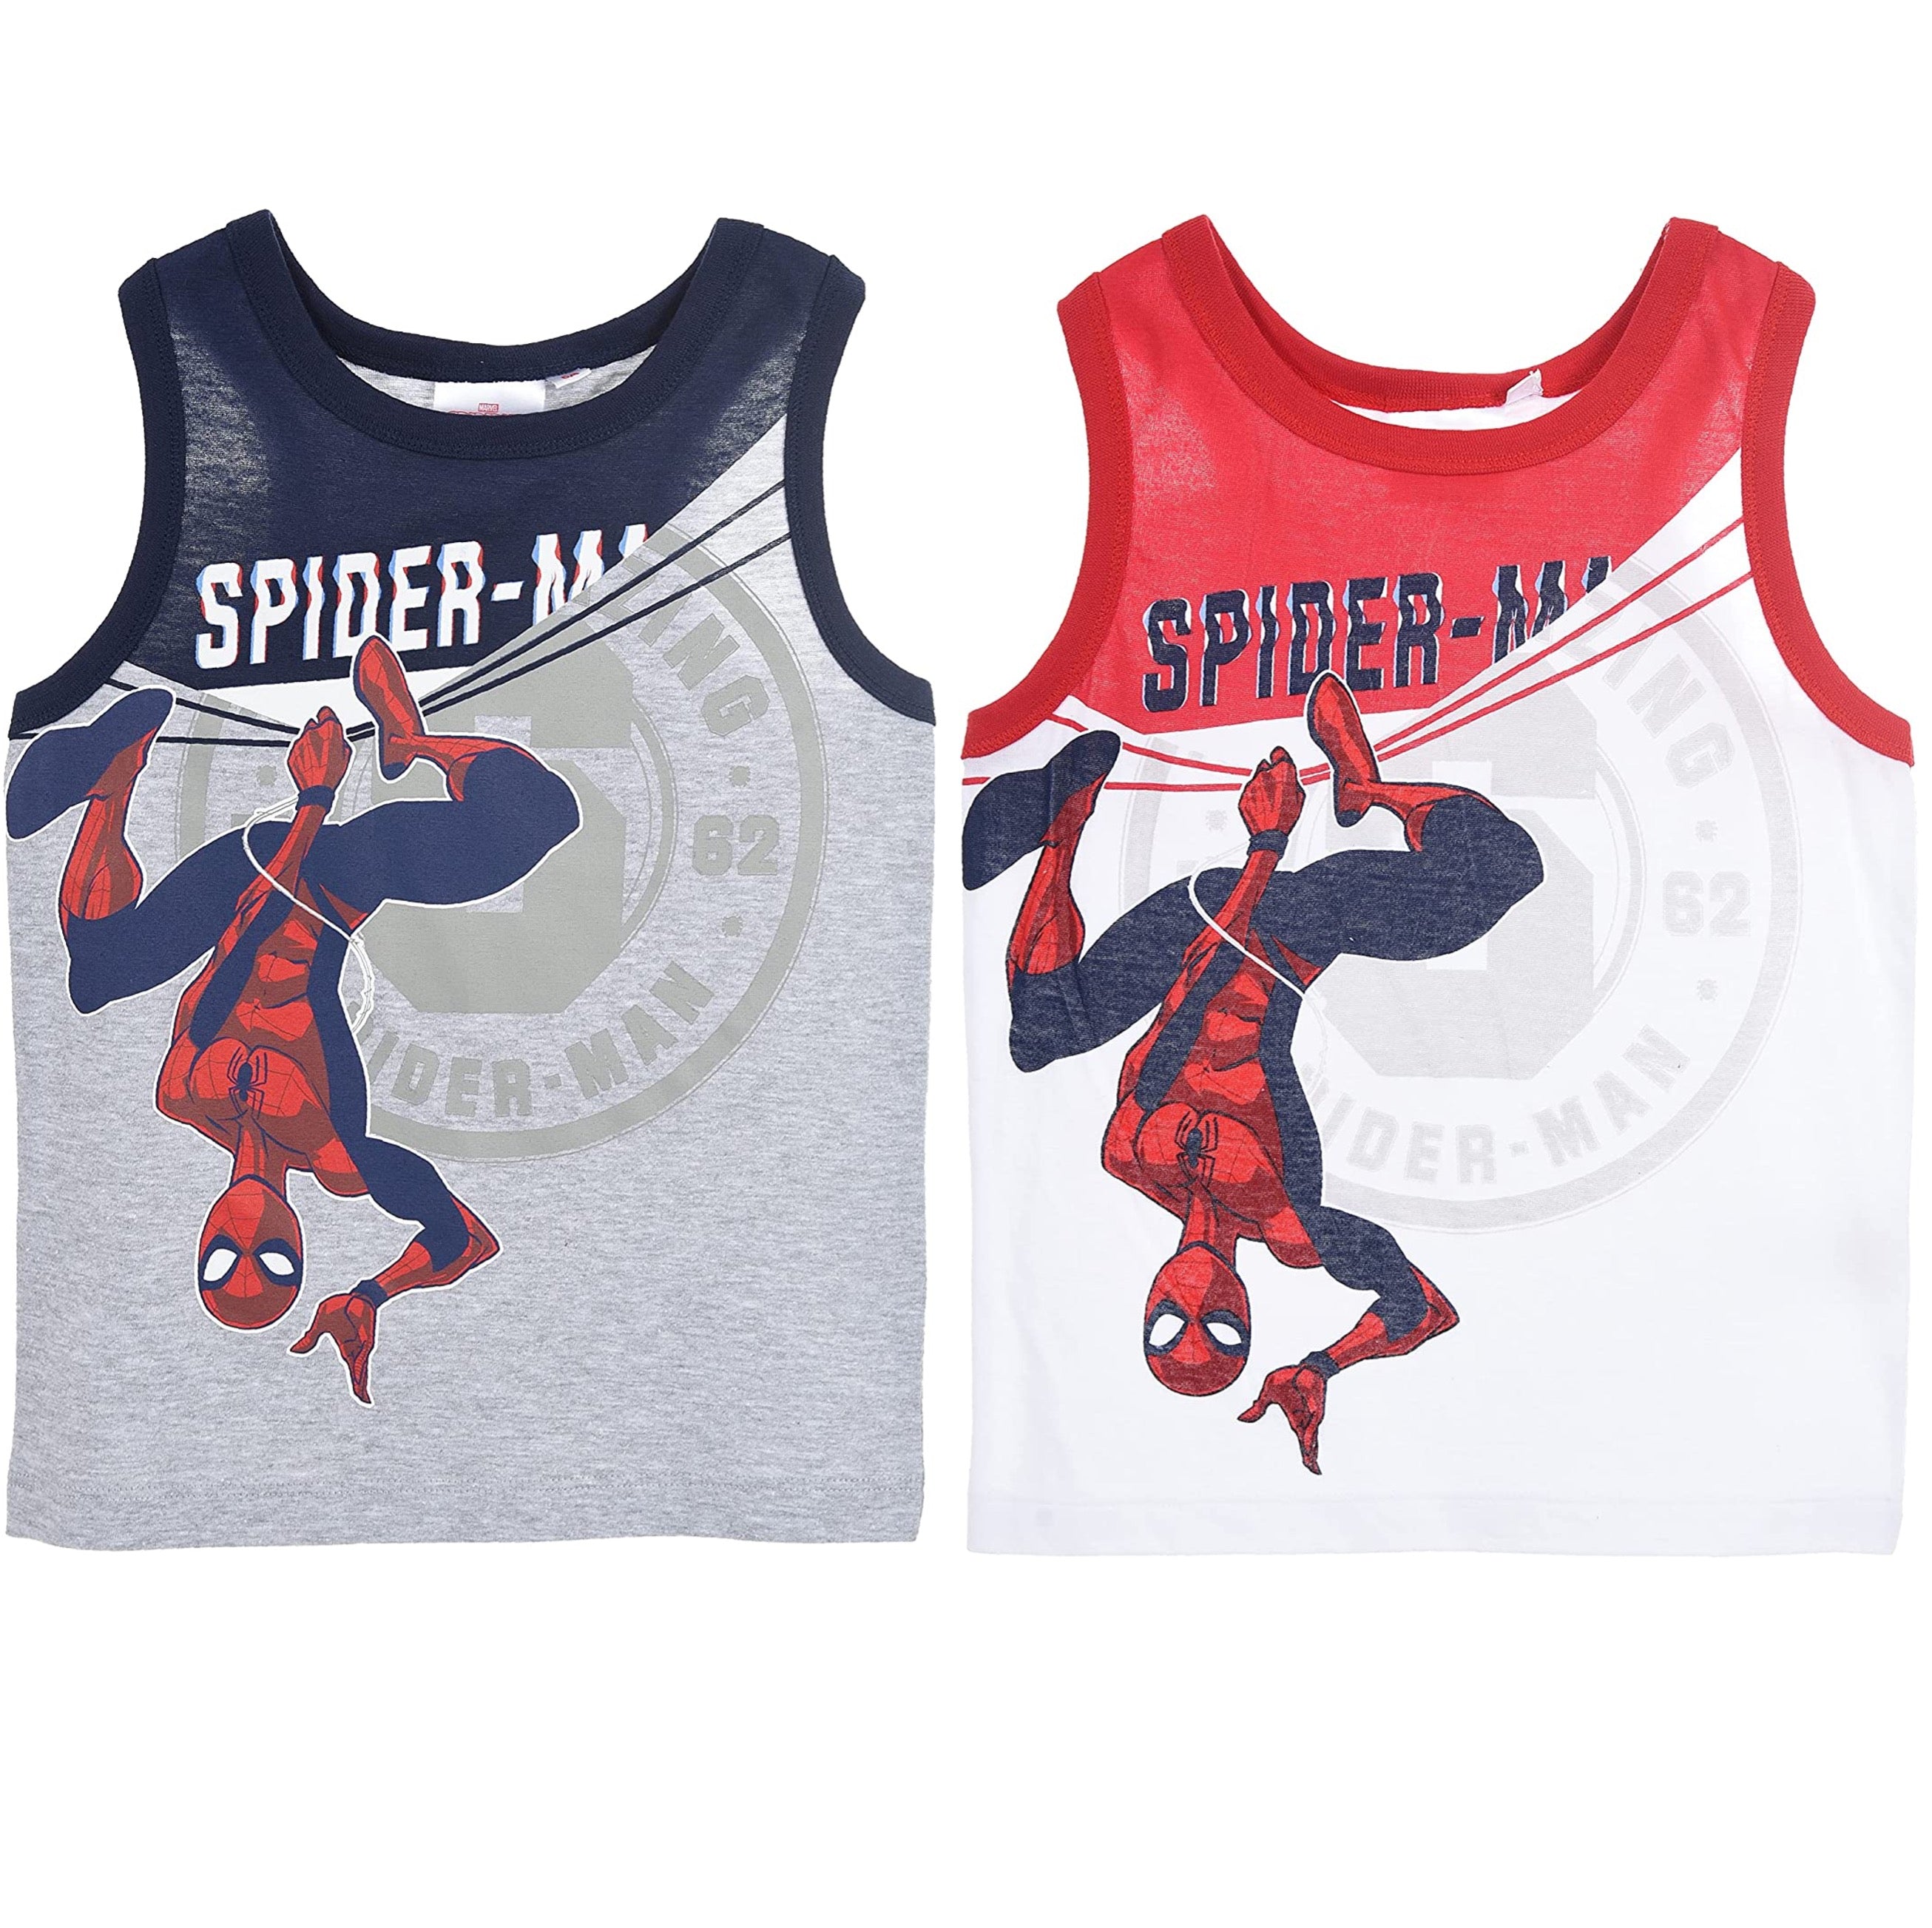 Marvel Avengers Spiderman Basketball Jersey Summer Sleeveless